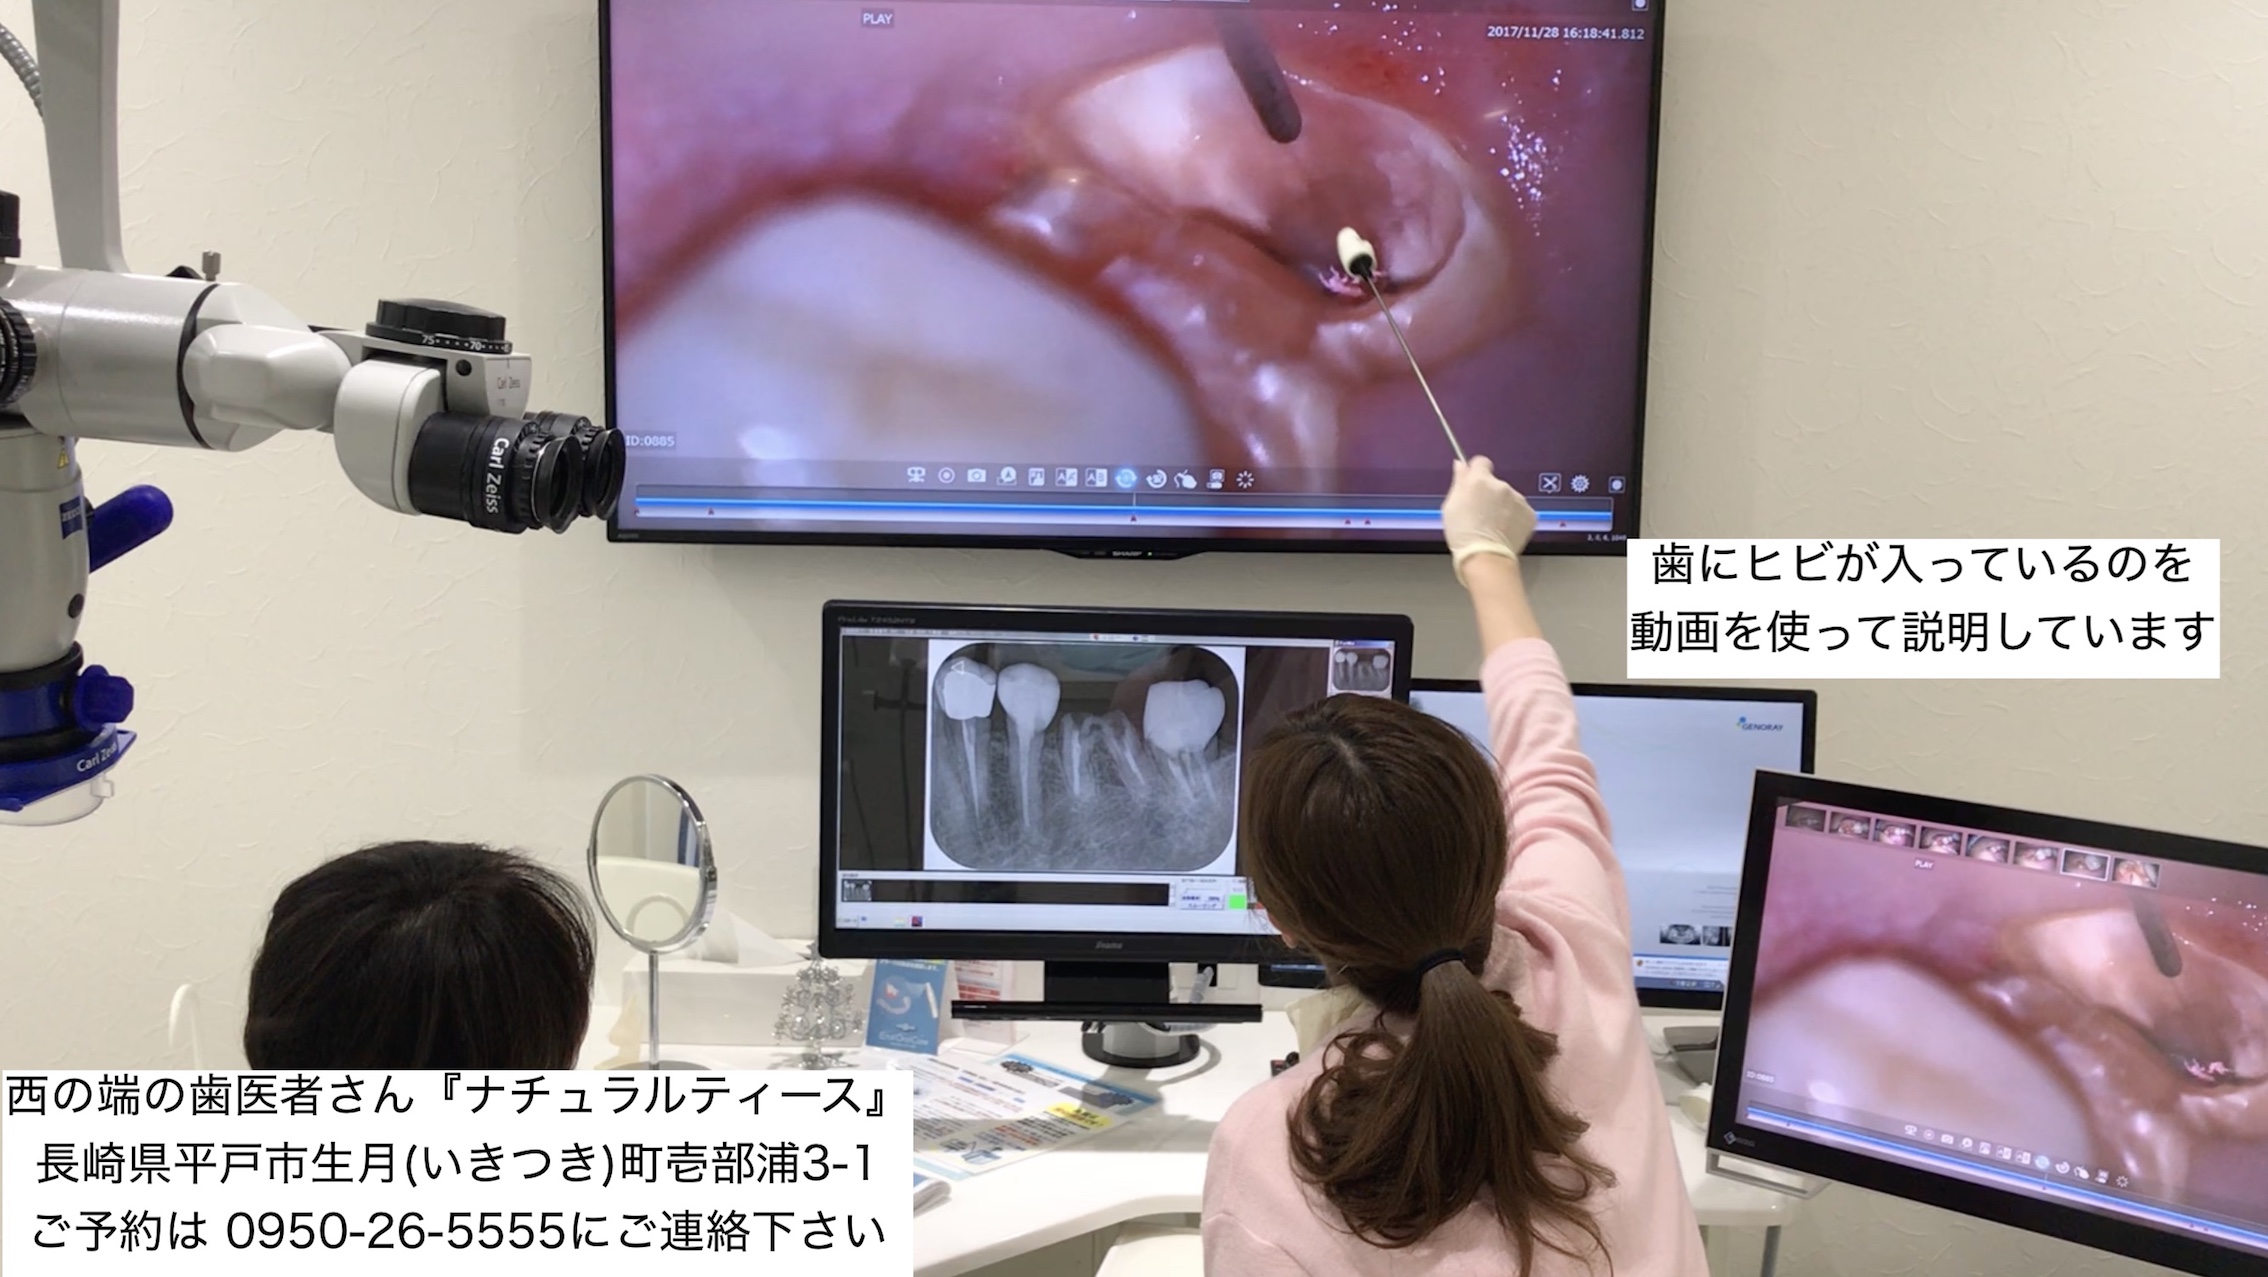 歯医者 動画で説明 マイクロスコープ 顕微鏡 長崎 平戸 佐世保 松浦